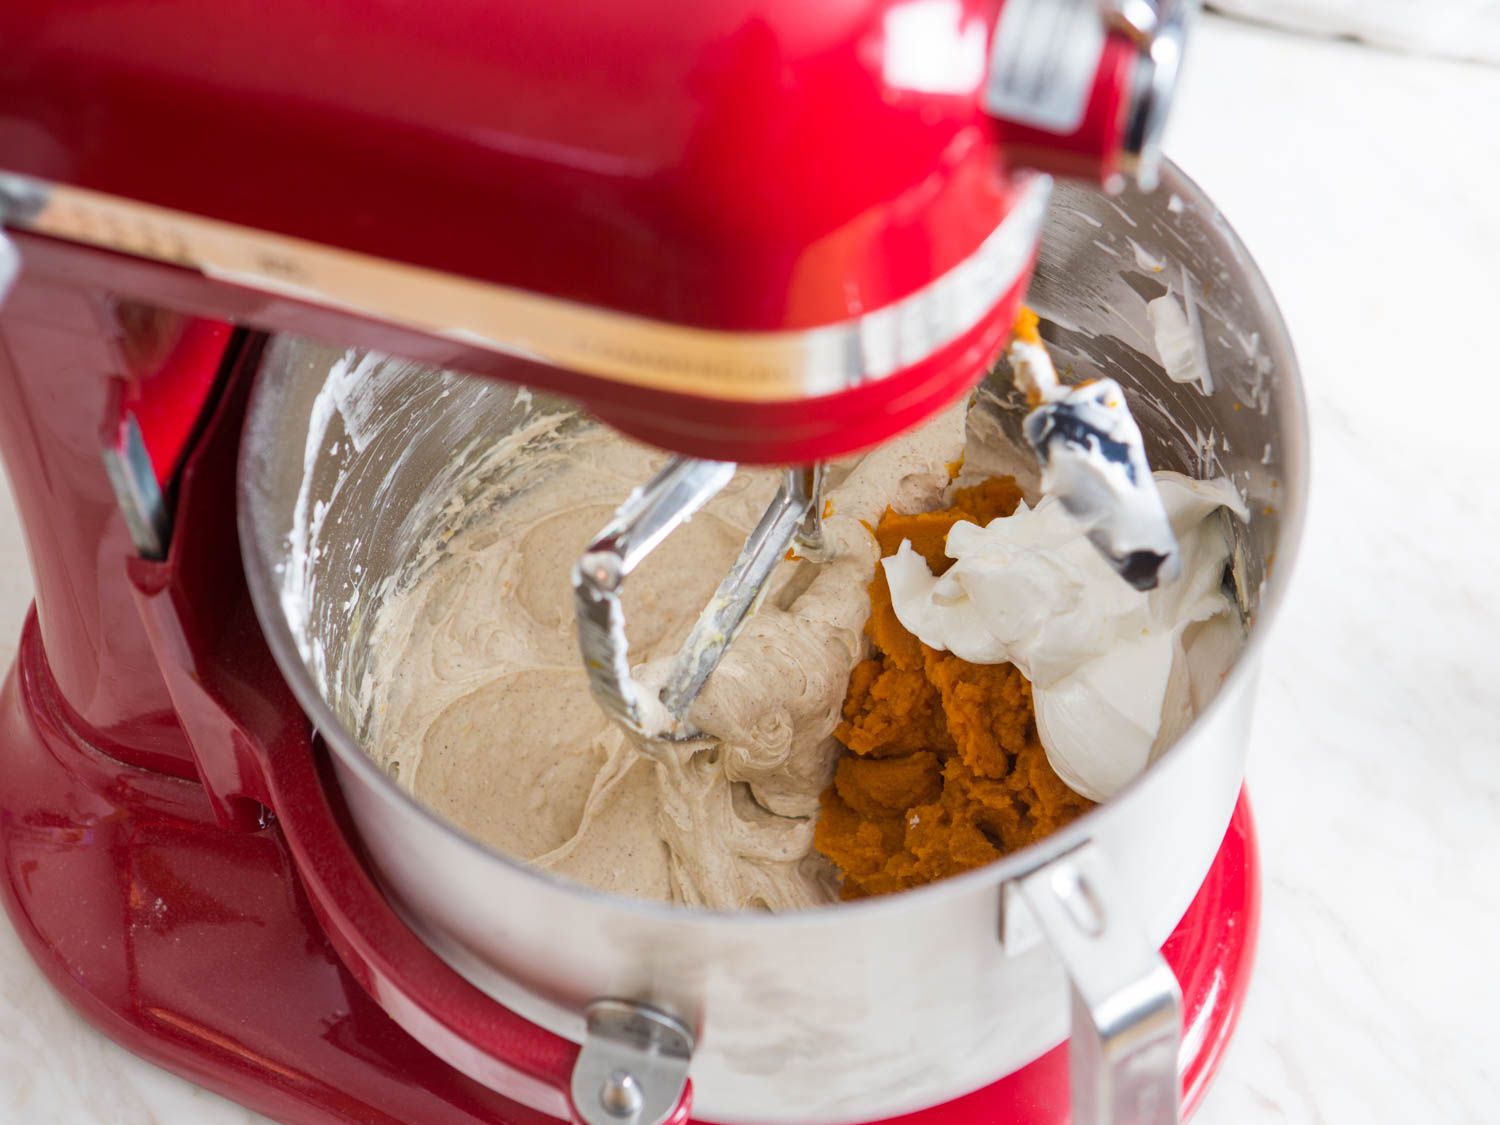 加入南瓜泥和酸奶油到搅拌碗的奶酪蛋糕混合物中，制作南瓜奶酪蛋糕。